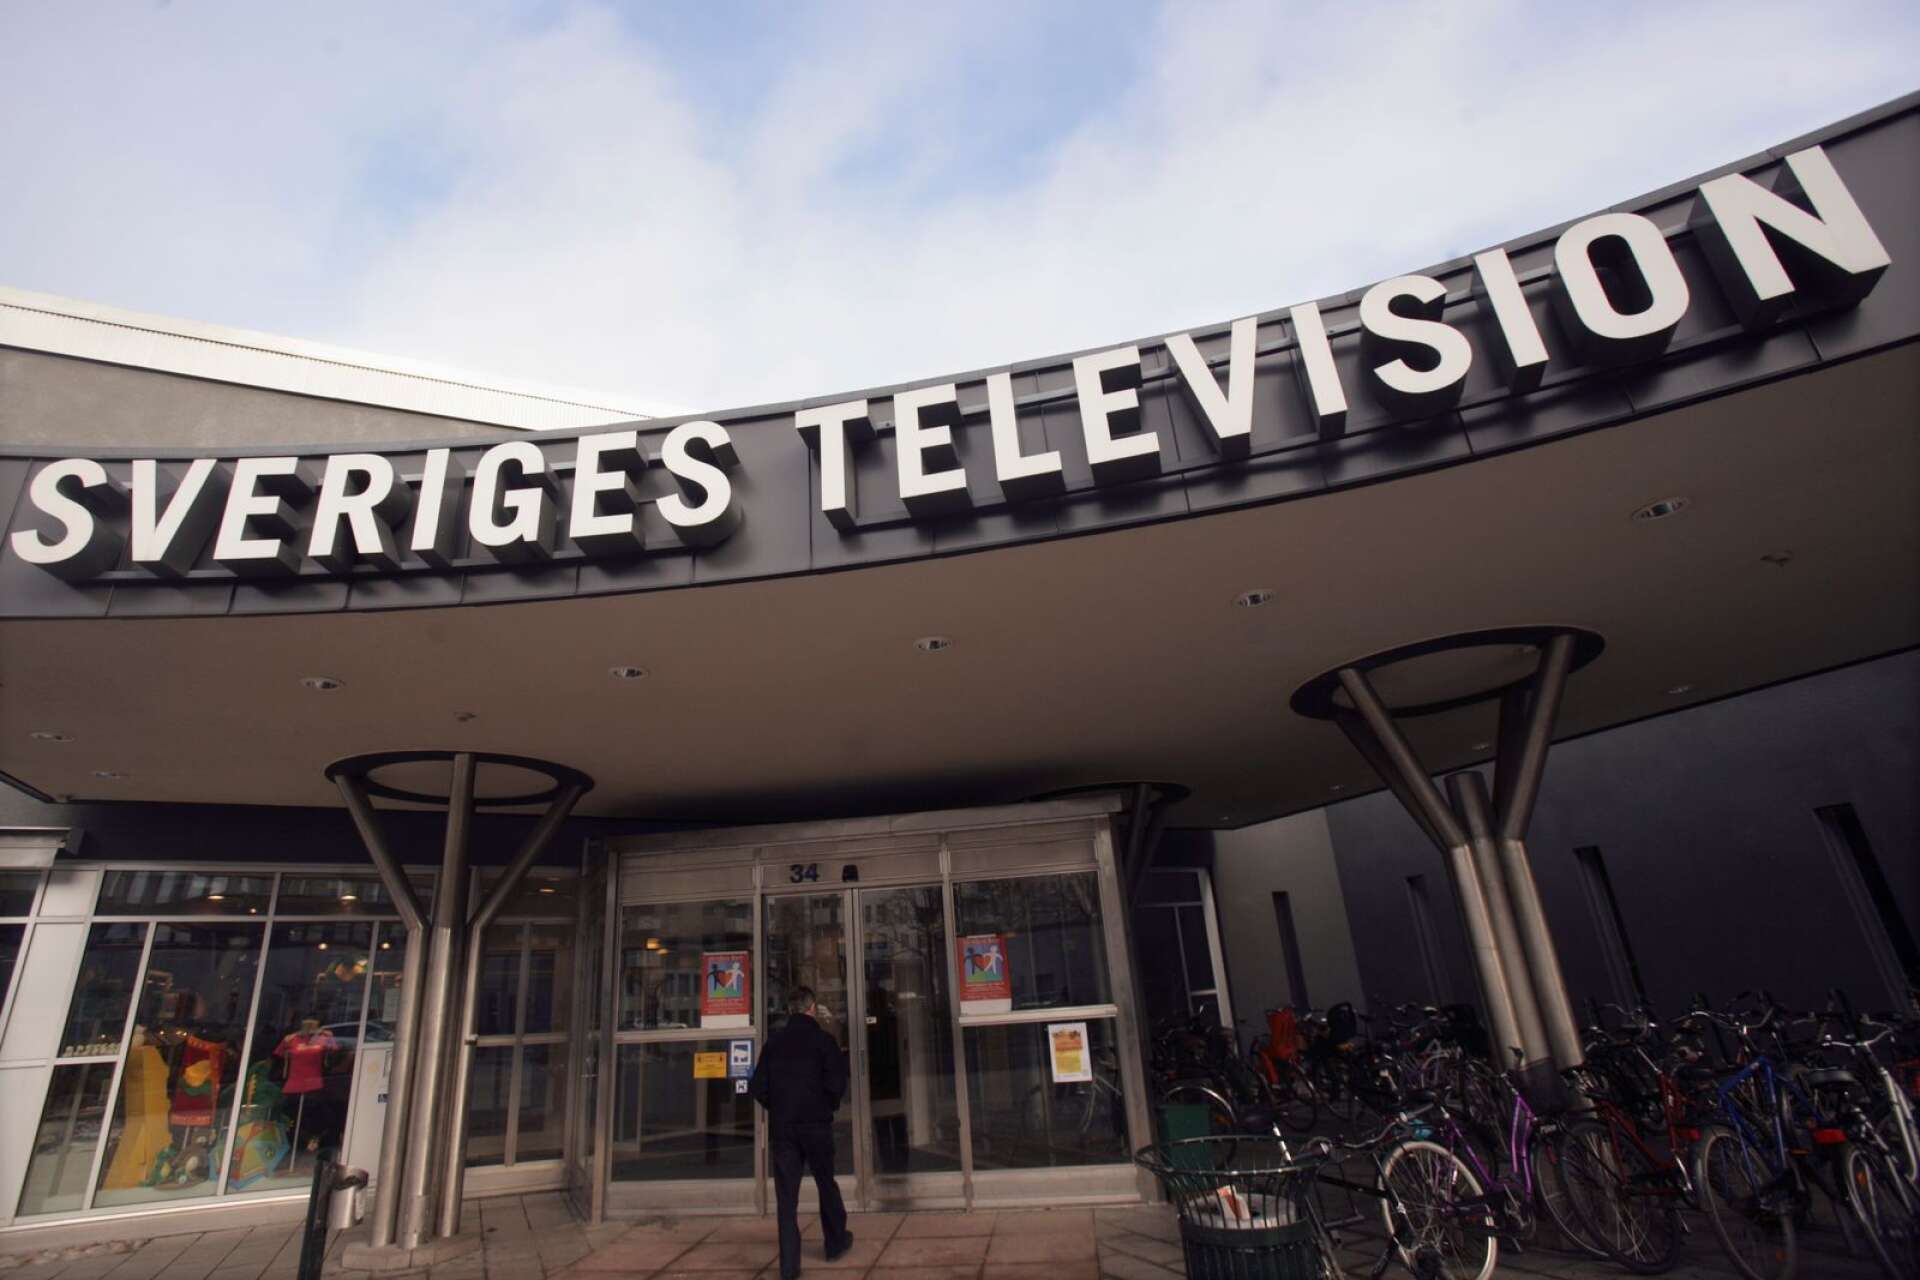 SVT:s Uppdrag Granskning sätter fokus på Karlstad. Affärerna kring gamla Stadshuset granskas just nu av programmets reportrar.